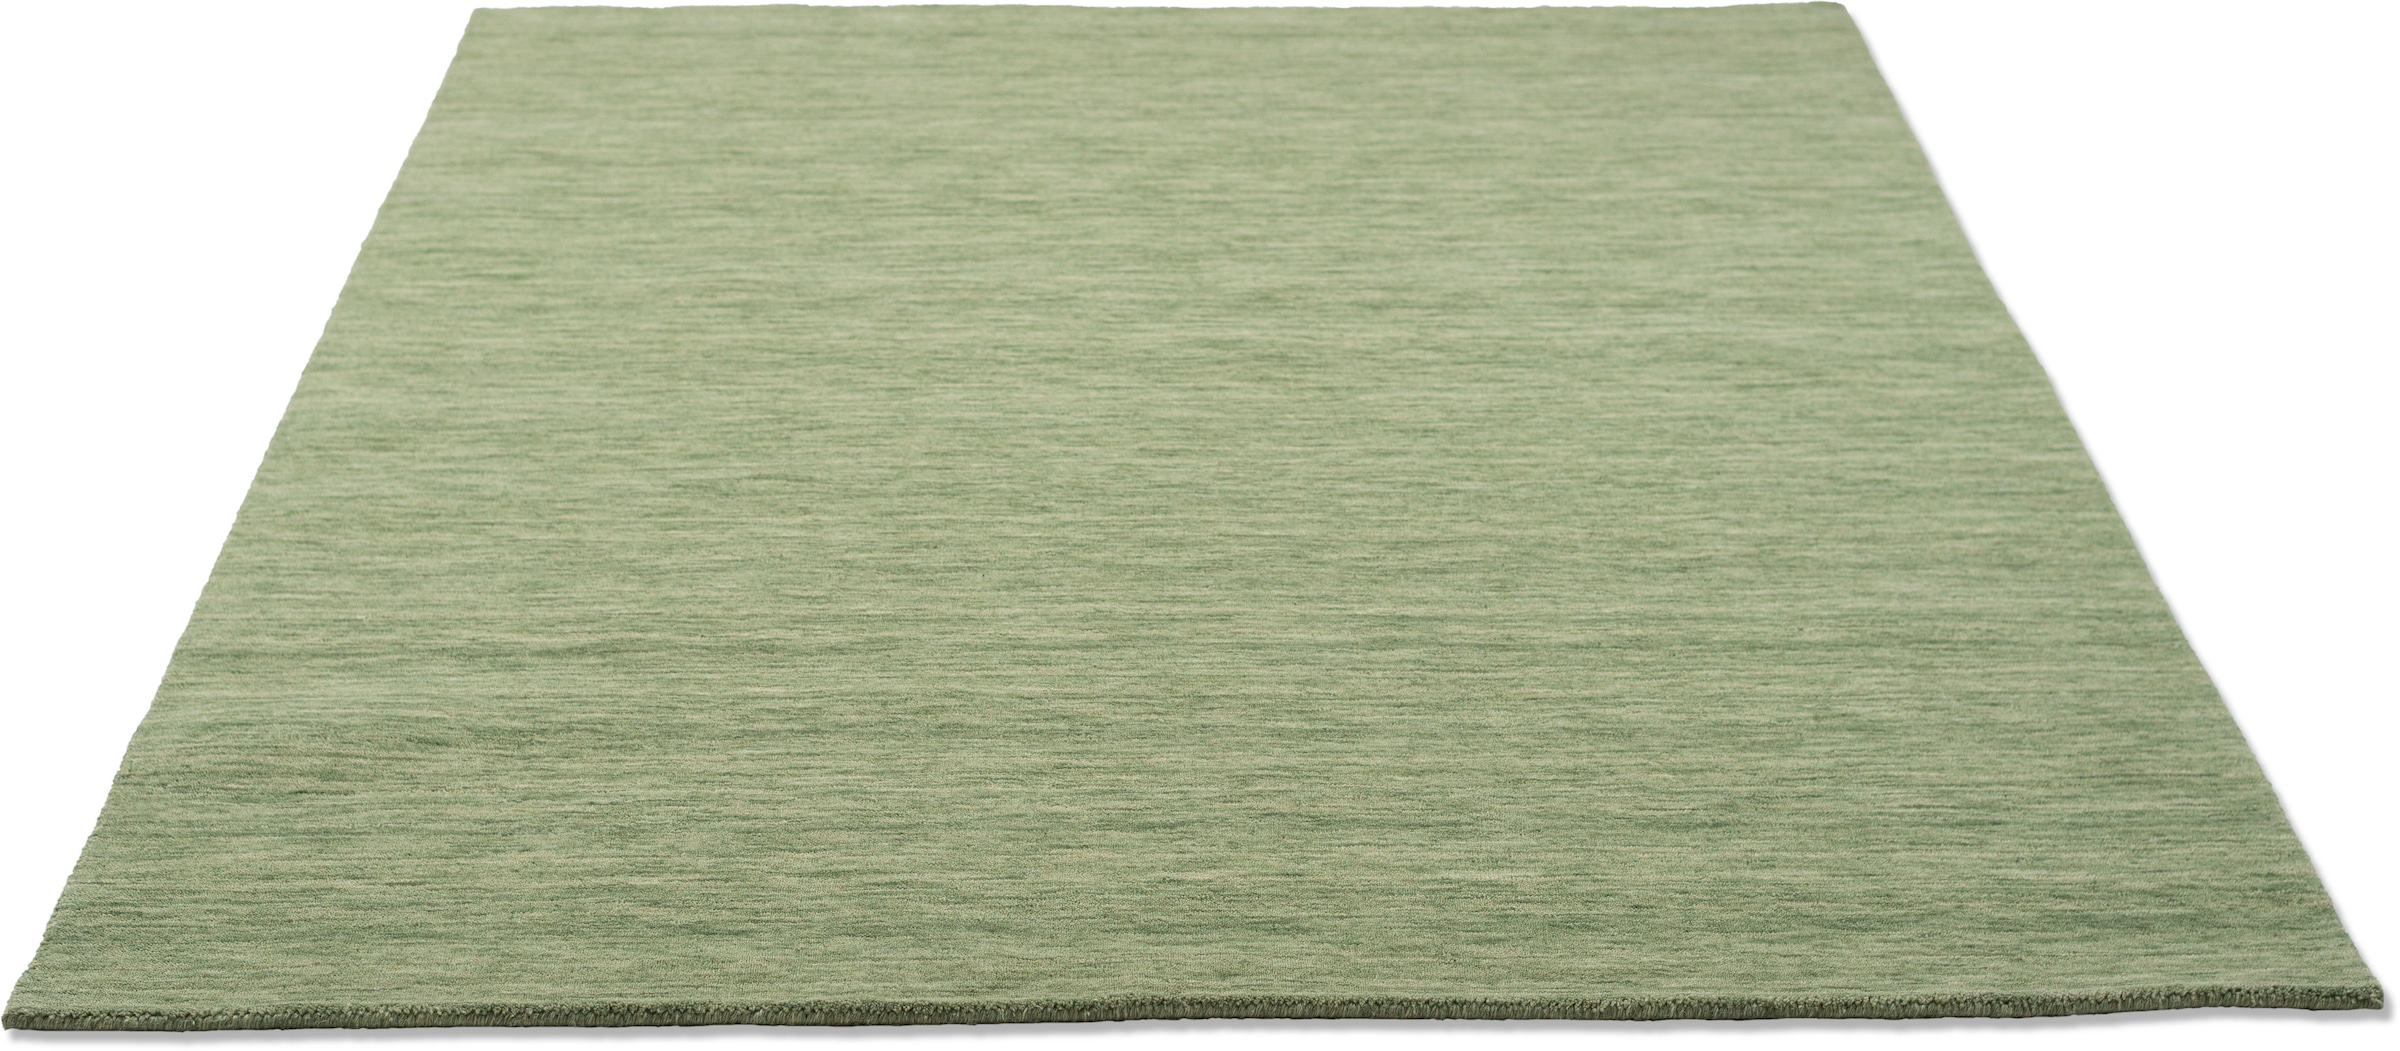 THEKO Wollteppich »Holi«, rechteckig, Uni-Farben, leicht meliert, reine Wolle, handgewebt mit Knüpfoptik